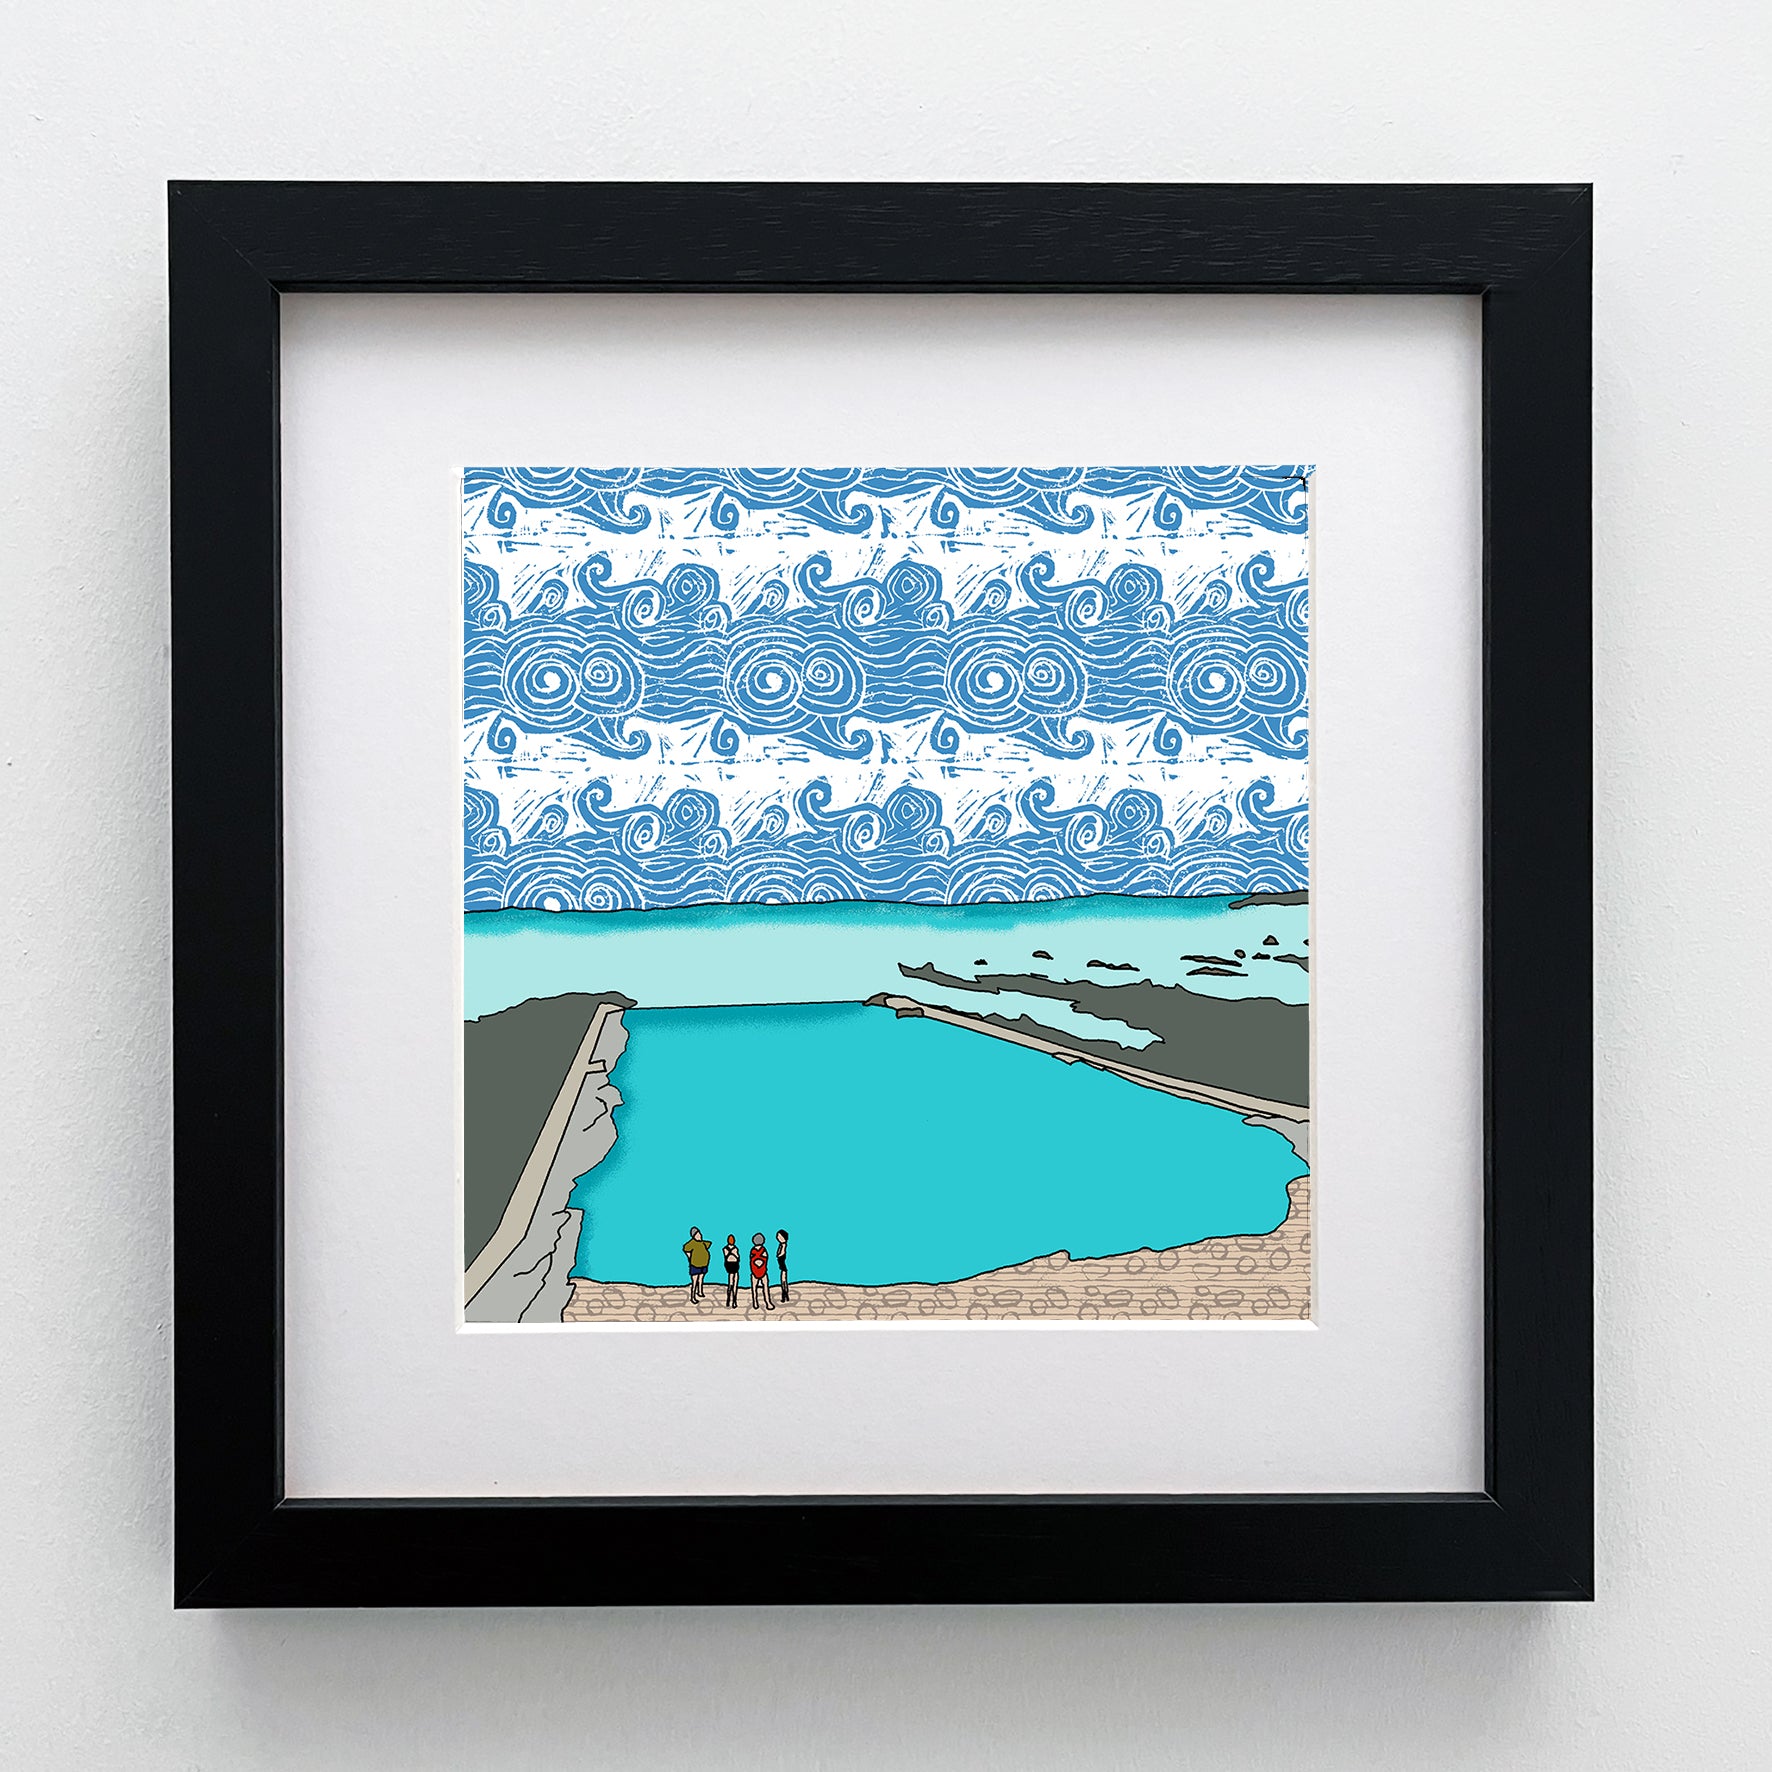 Pittenweem Tidal Pool - Giclee Print 10"x10"